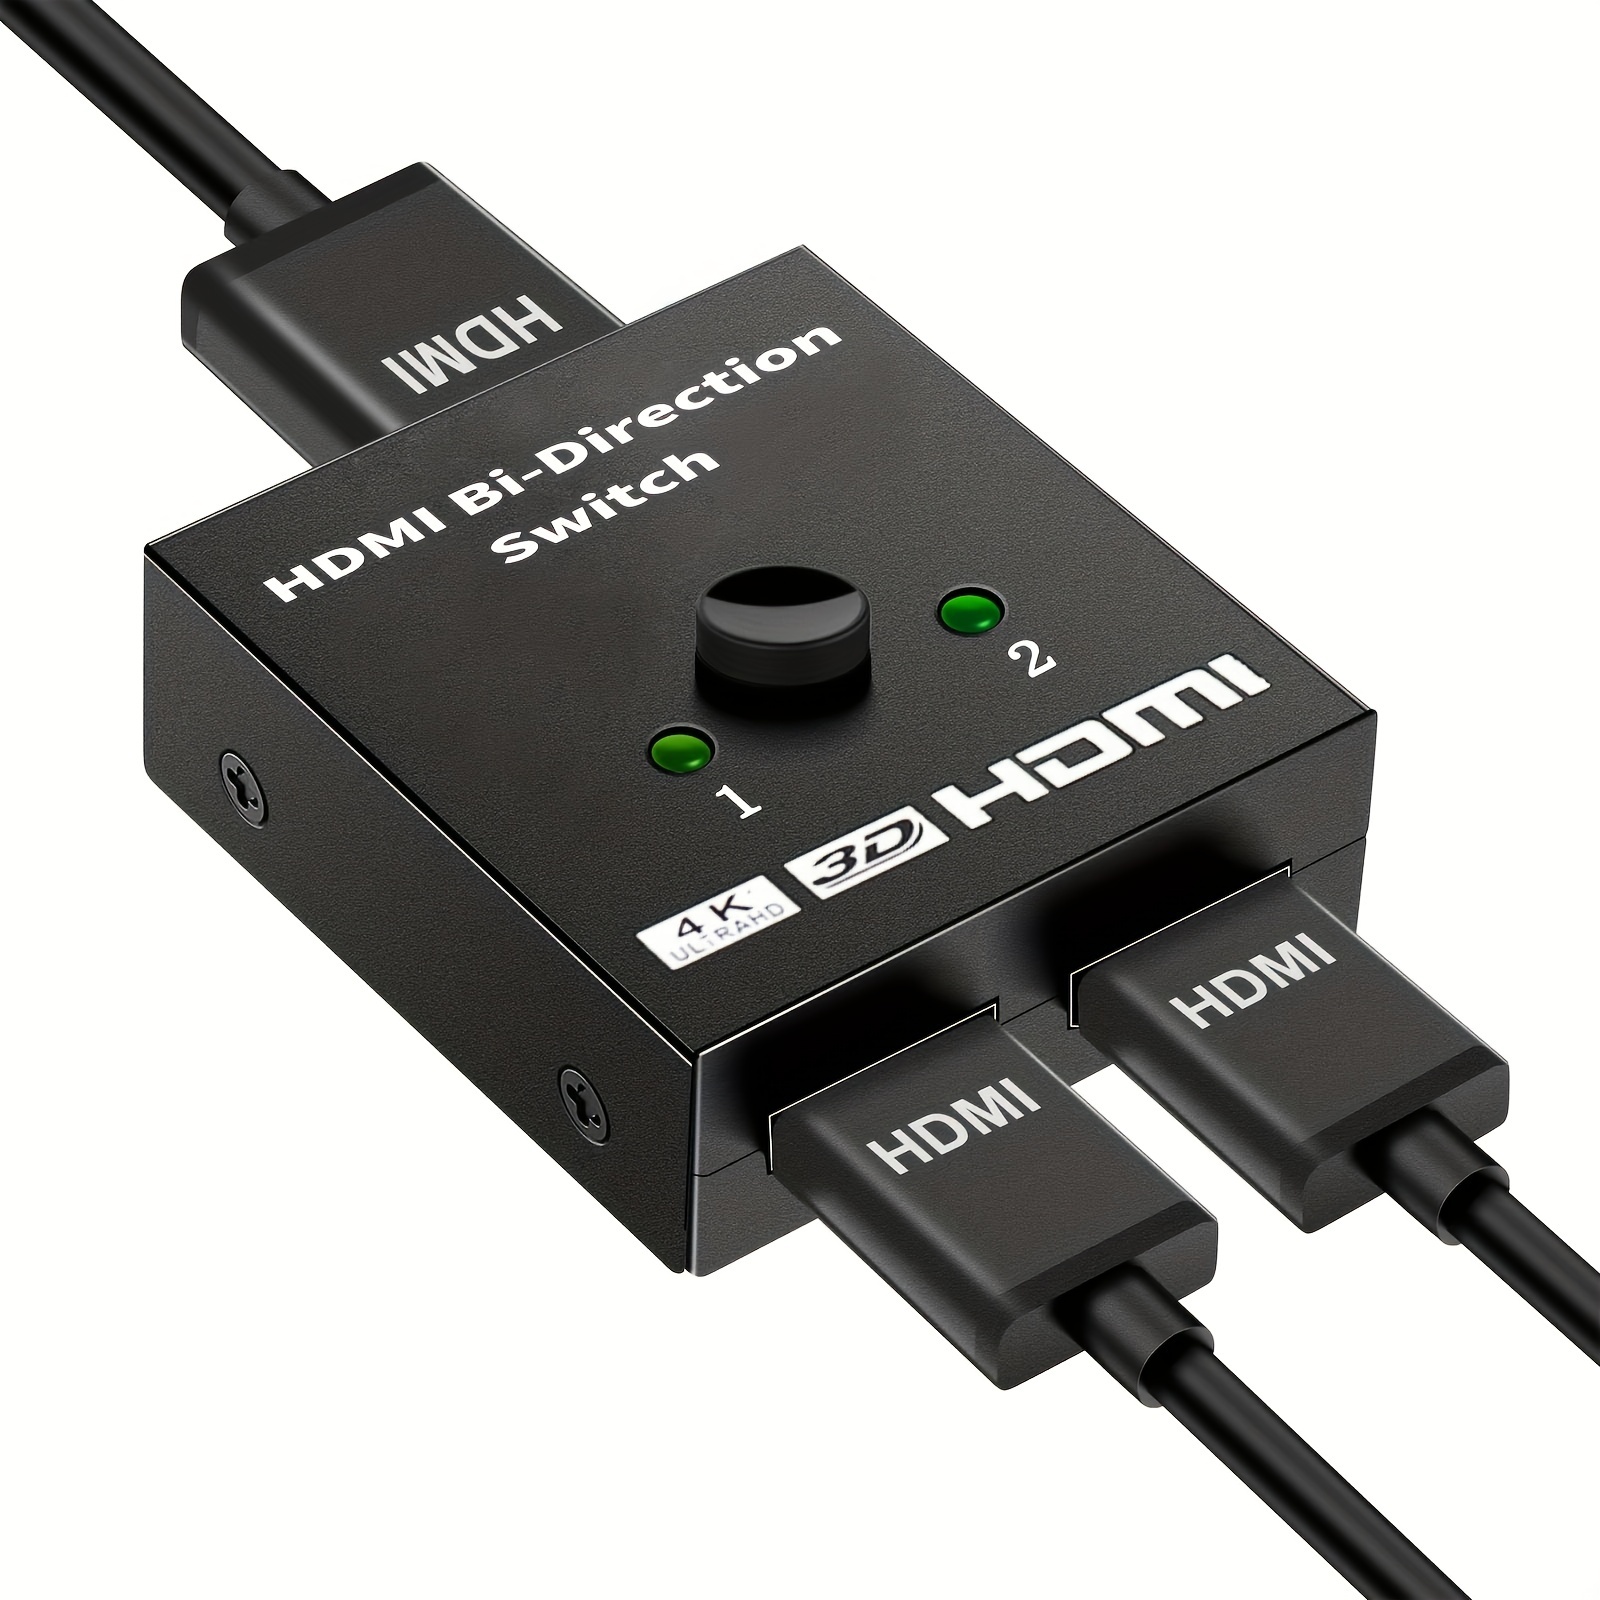 Switch Automático Multi-entrada a HDMI - Conversores de Señal de Vídeo